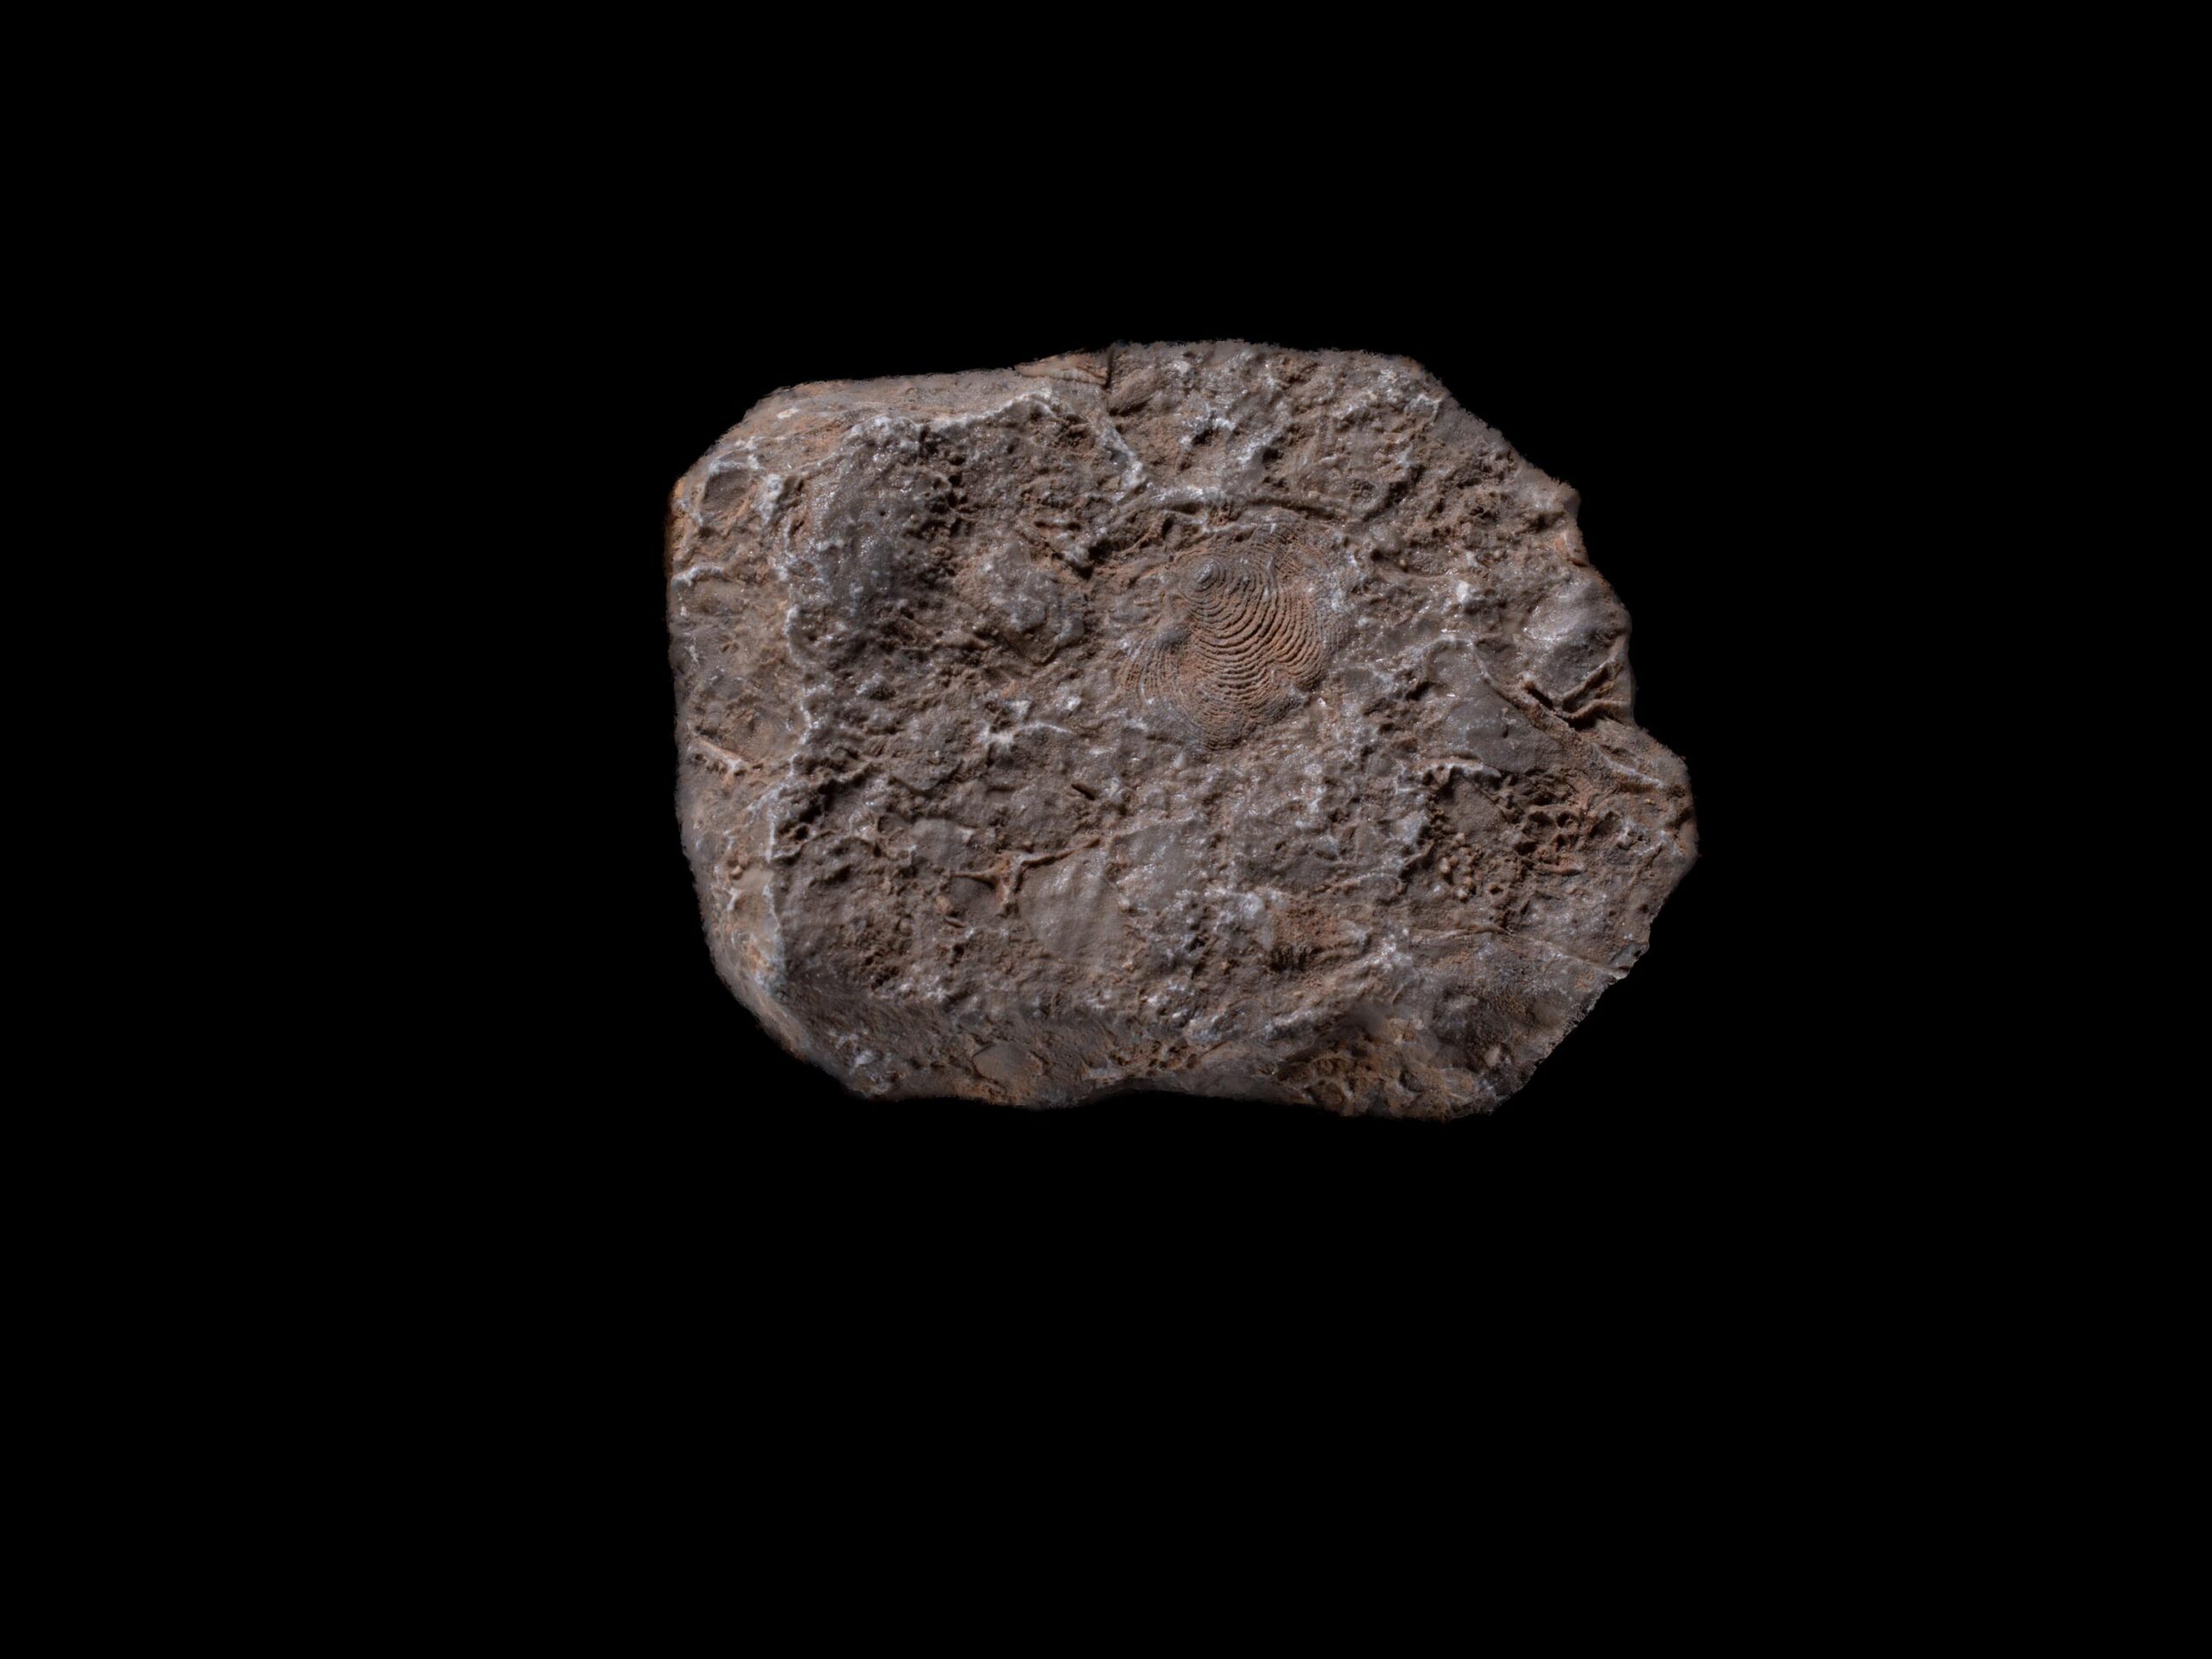 Ellipsactinia (Giurassico Superiore – Cretacico Inferiore), Calcari di scogliera, Piano Battaglia